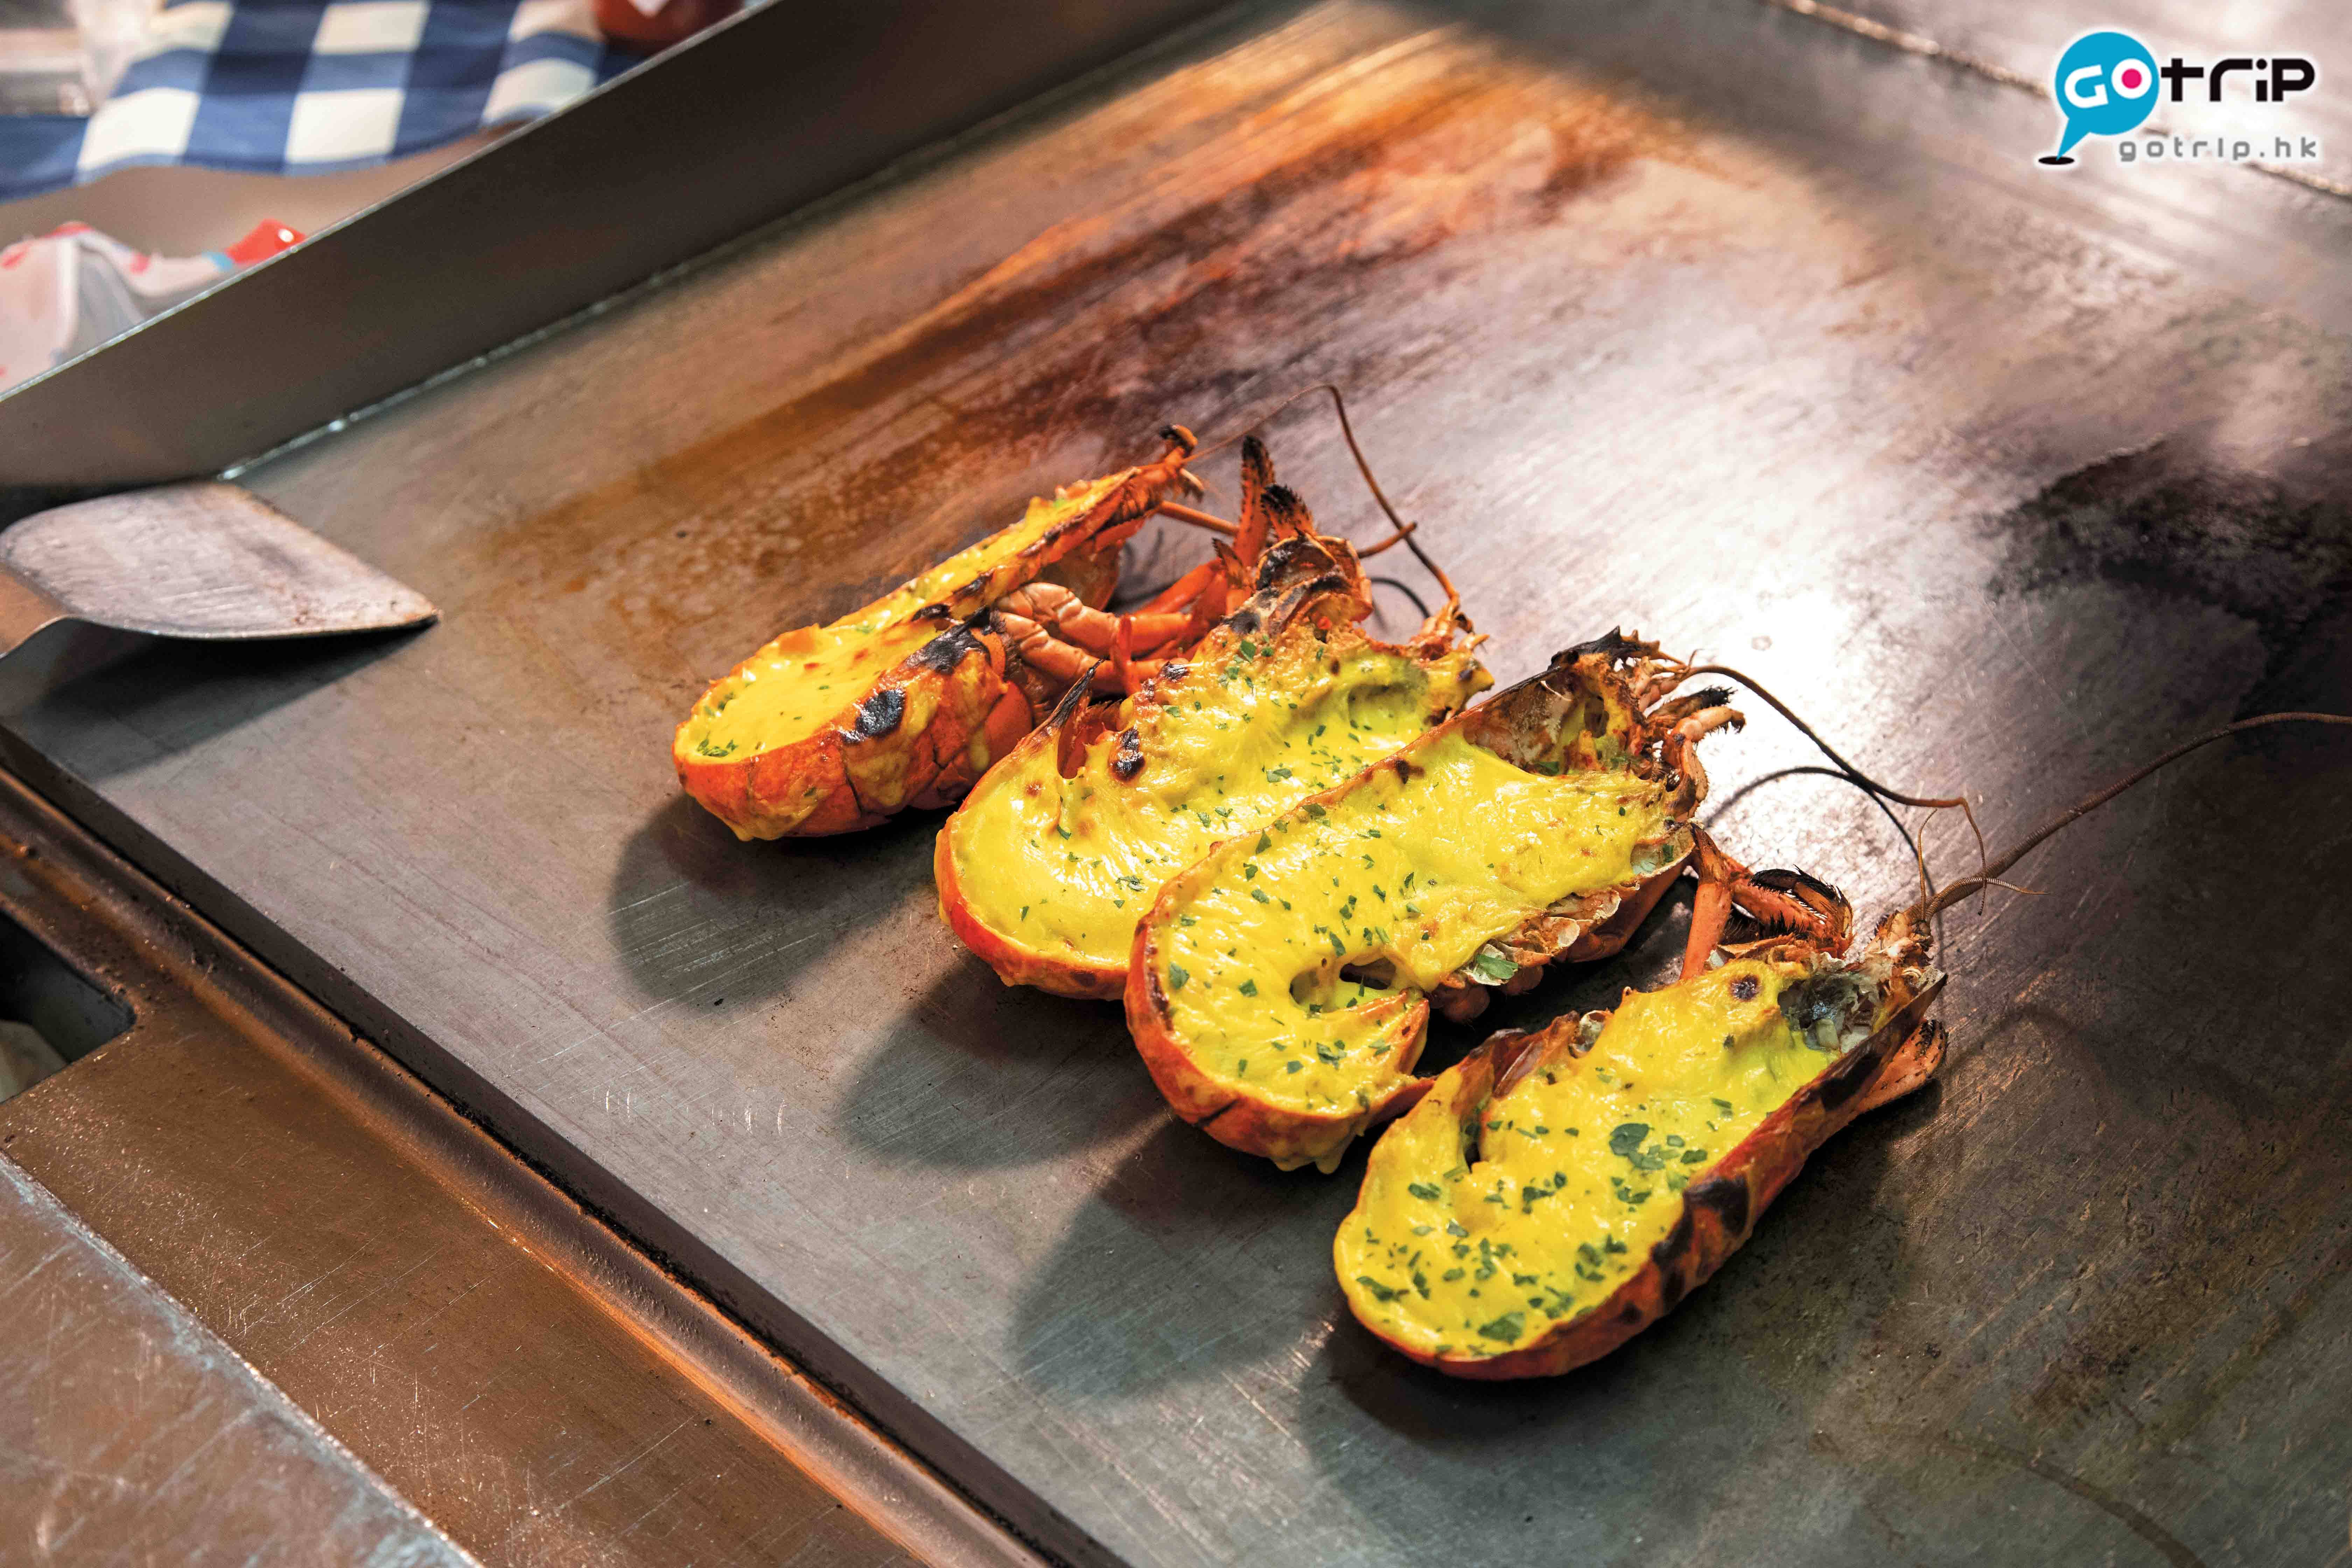 澳門自助餐2019 焗加拿大龍蝦，同樣是live station的重點之一。